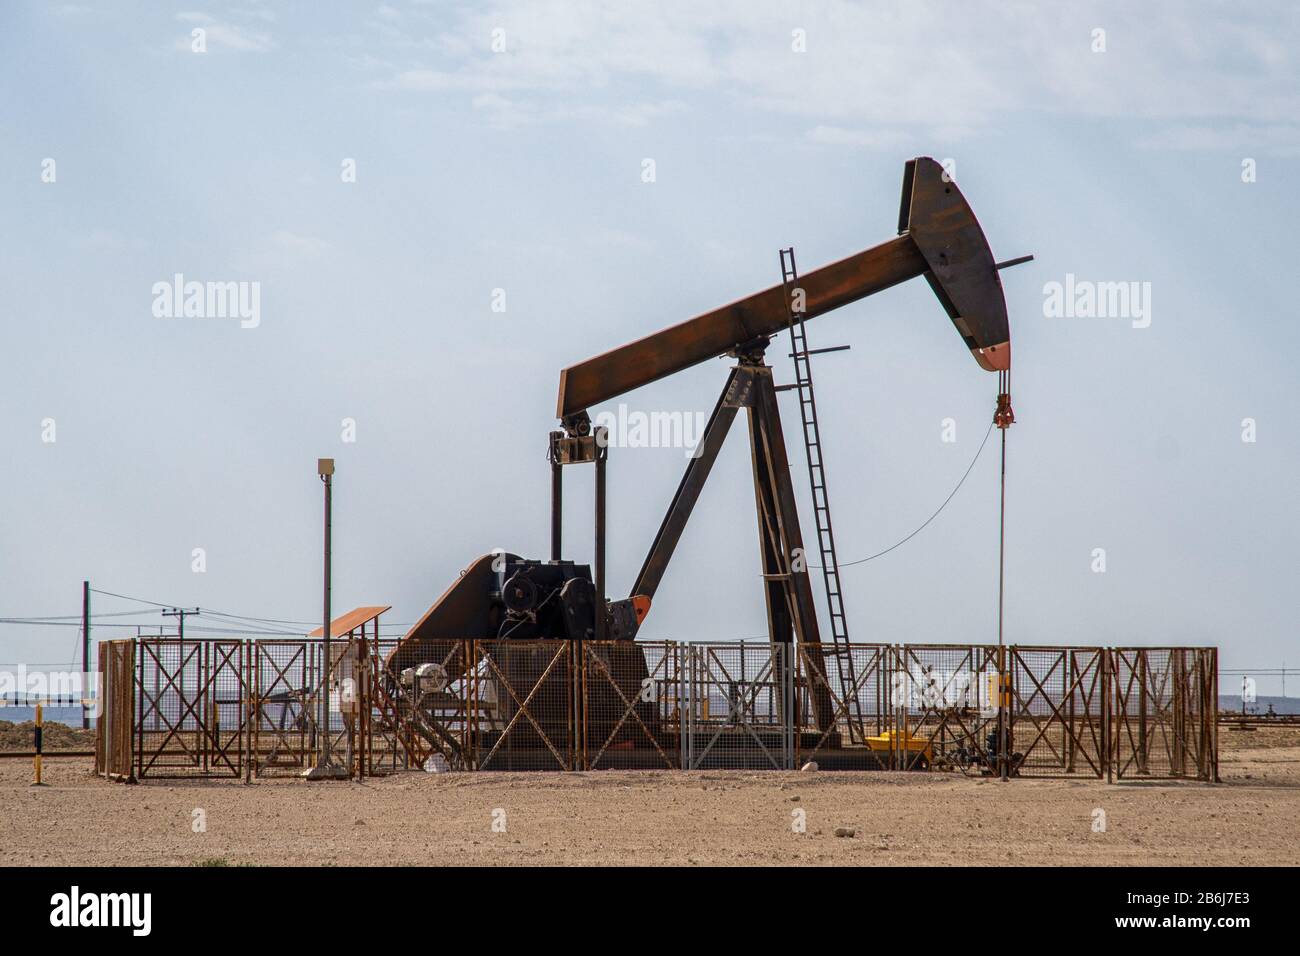 Oil well in the desert of Bahrain Stock Photo